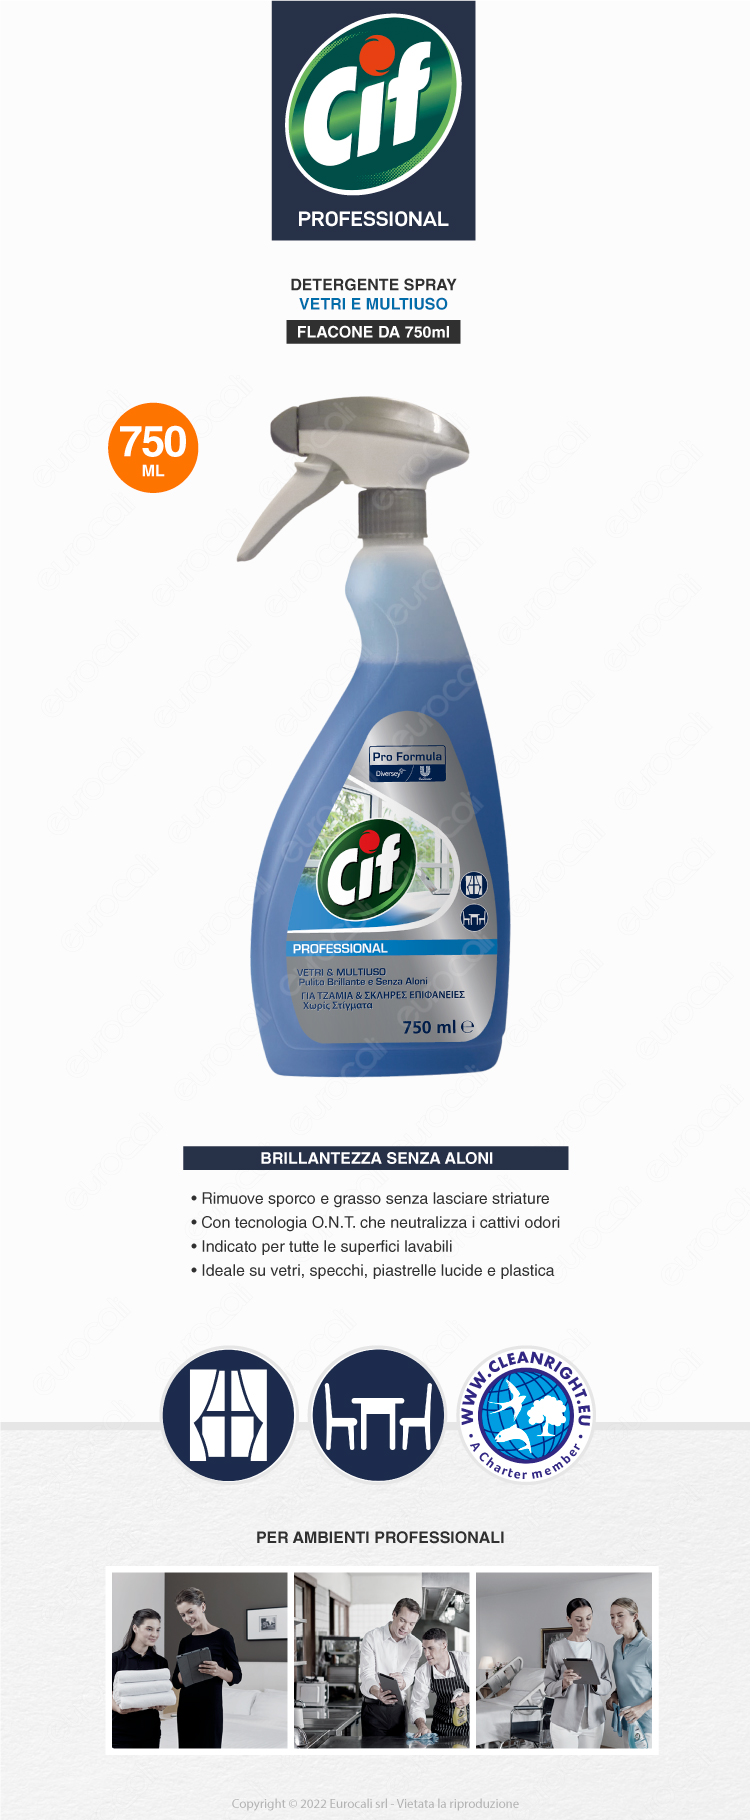 Detergente Spray Vetri e Multiuso da Cif Professional 750ml